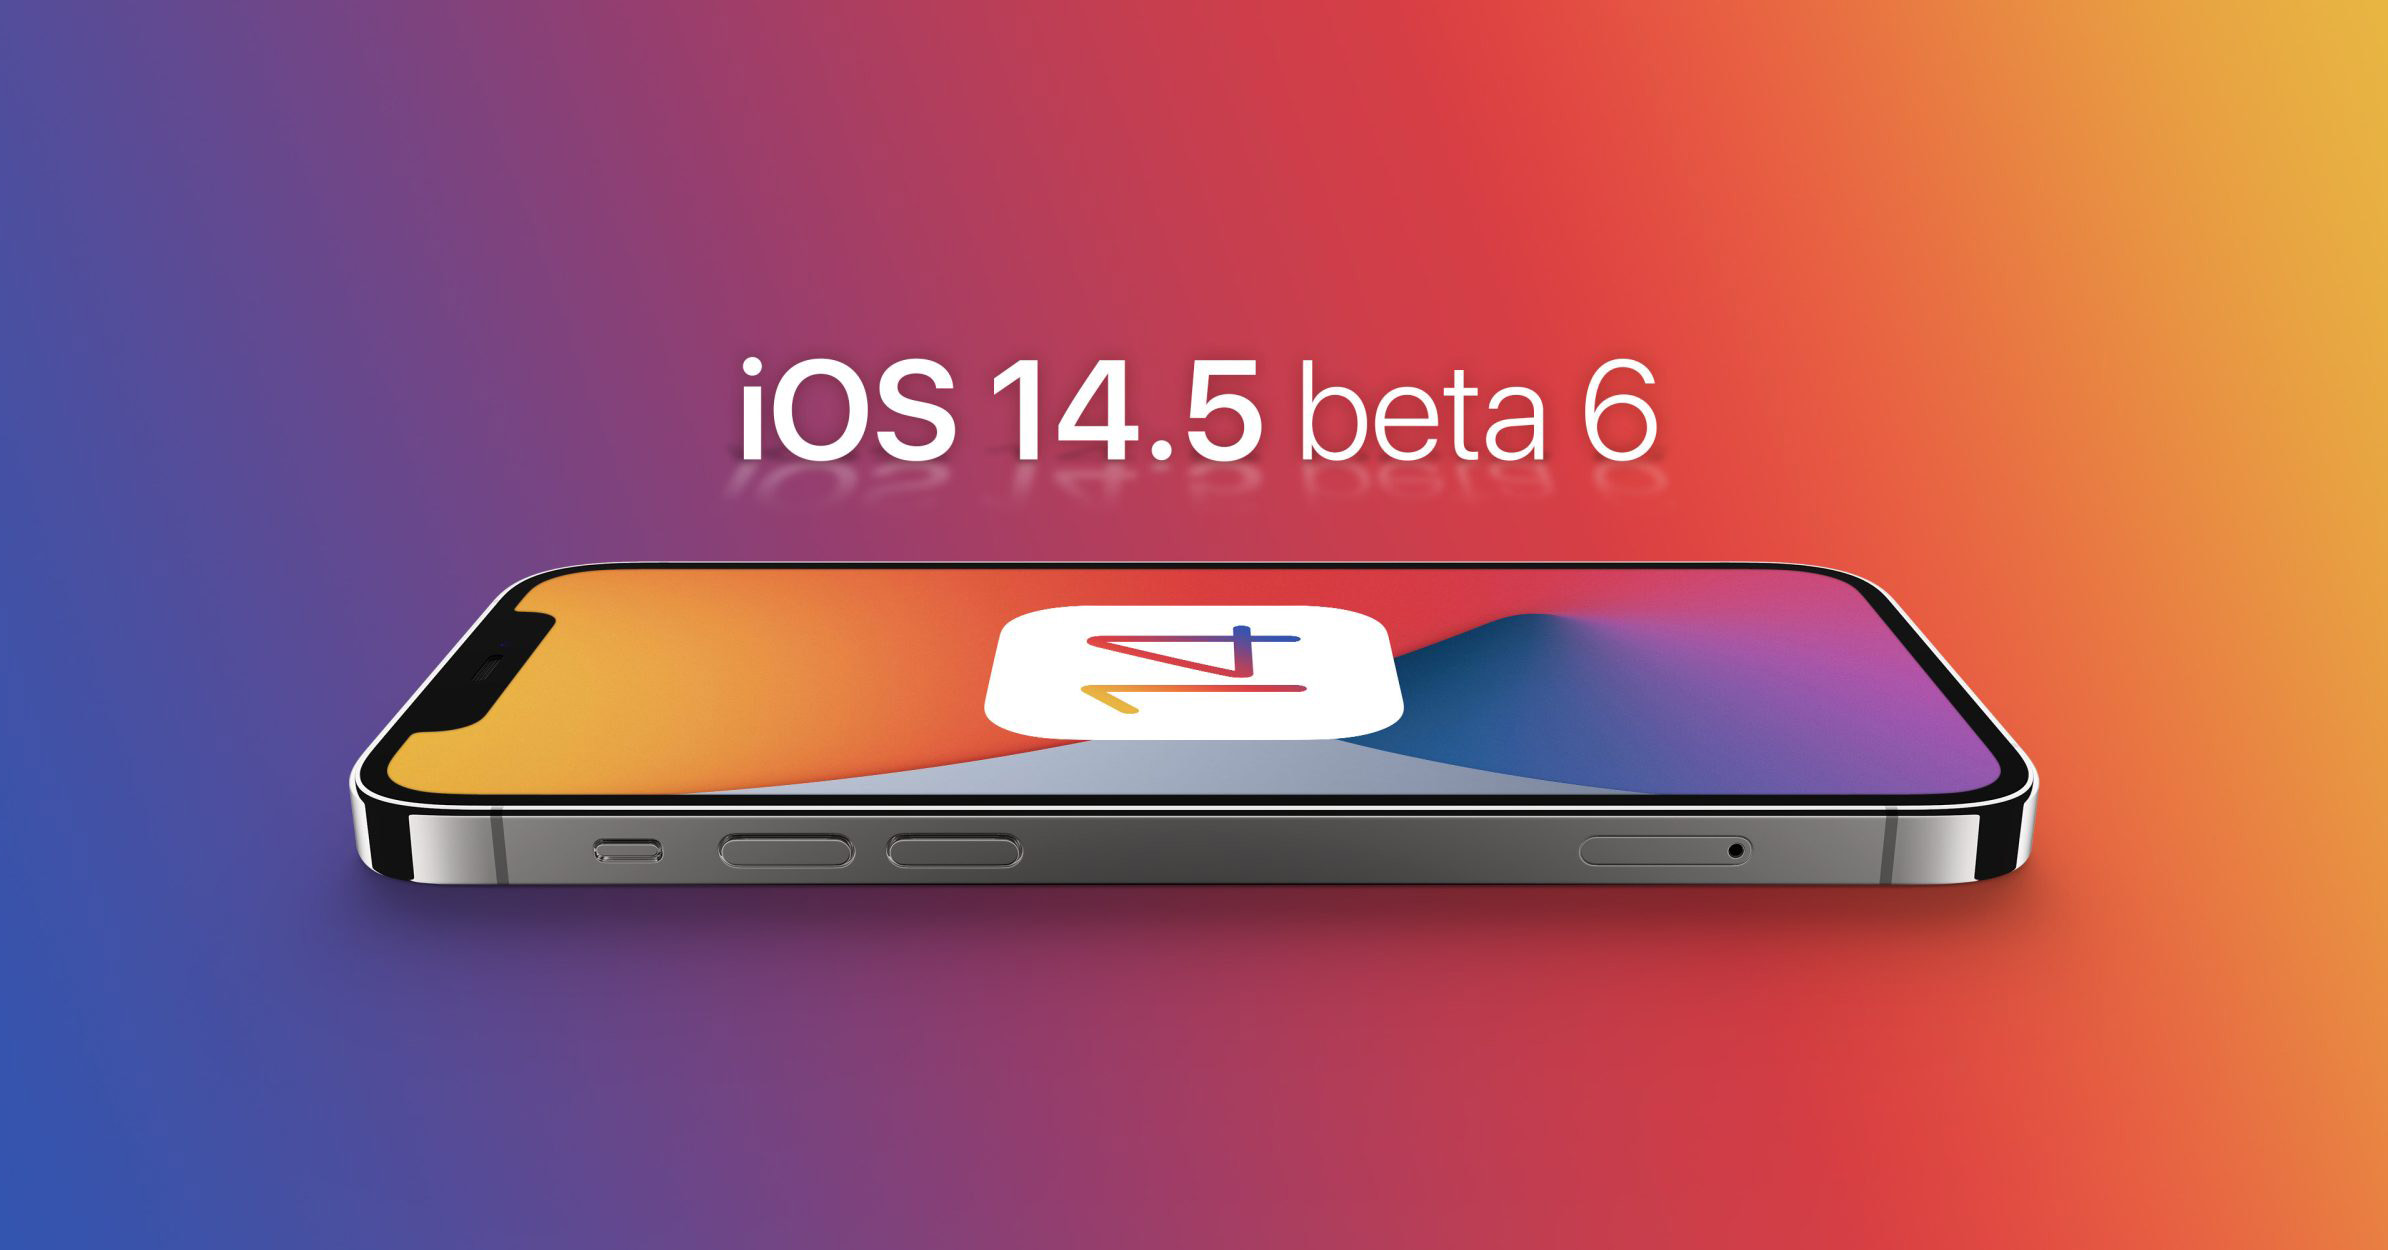 Sforum - Trang thông tin công nghệ mới nhất ios-14.5-b6 Apple phát hành iOS 14.5, iPadOS 14.5, macOS 11.3, tvOS 14.5, và watchOS 7.4 beta 6 